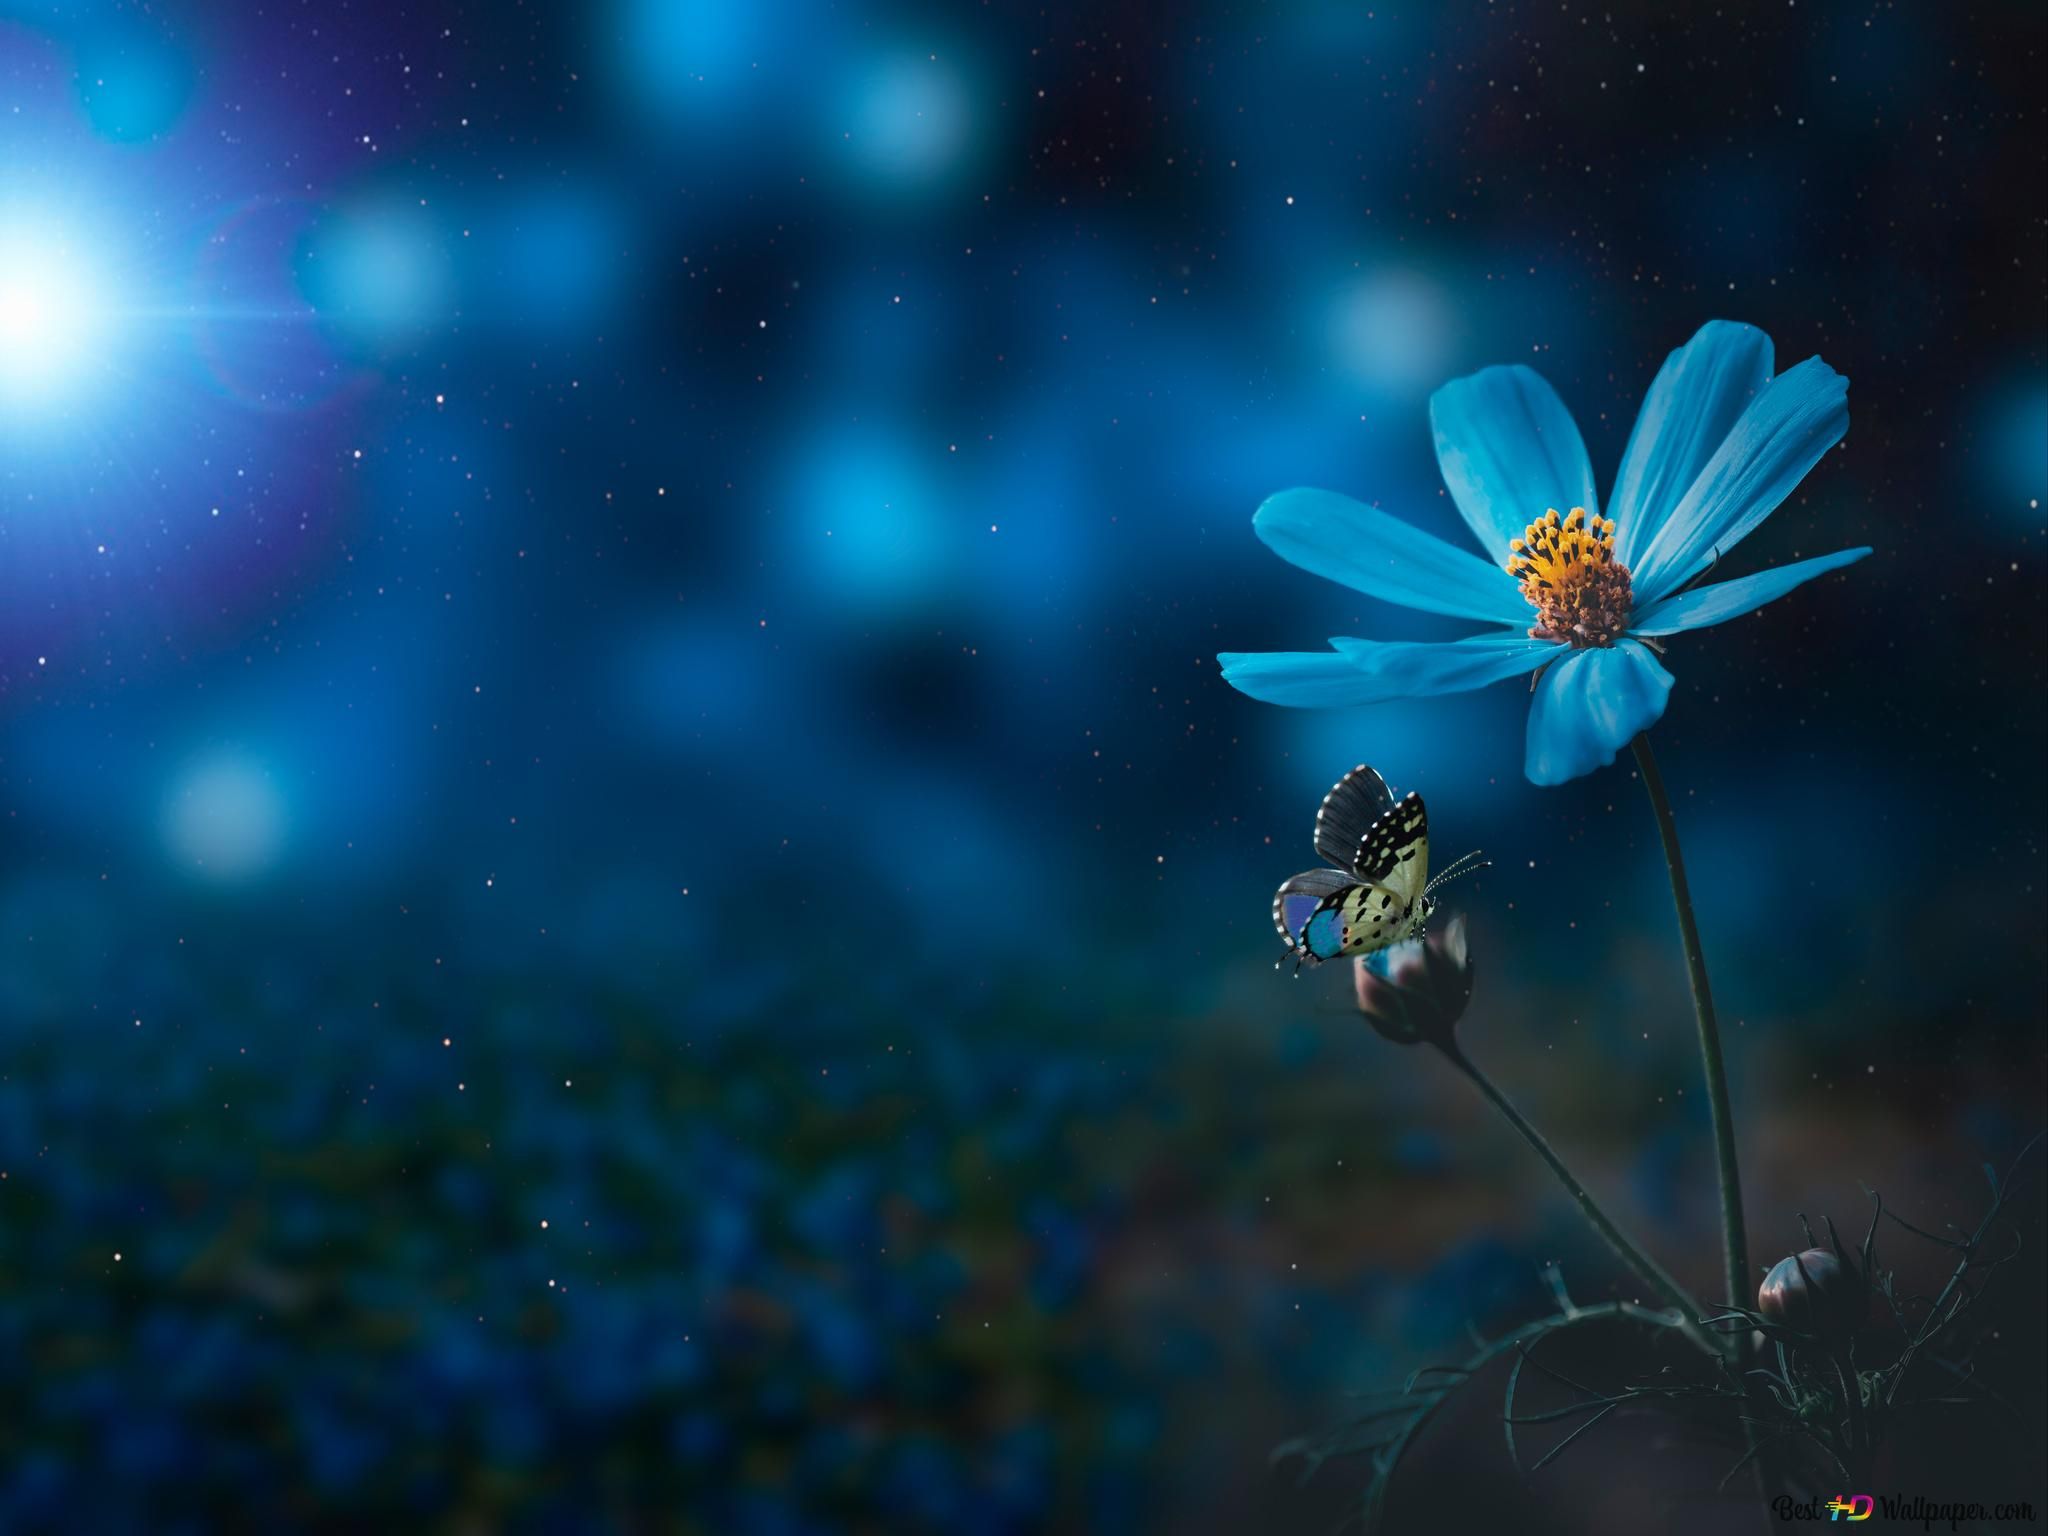 Verschwommen Hintergrundbild 2048x1536. Blaue Blume und Schmetterling im Dunkeln unscharf 6K Hintergrundbild herunterladen